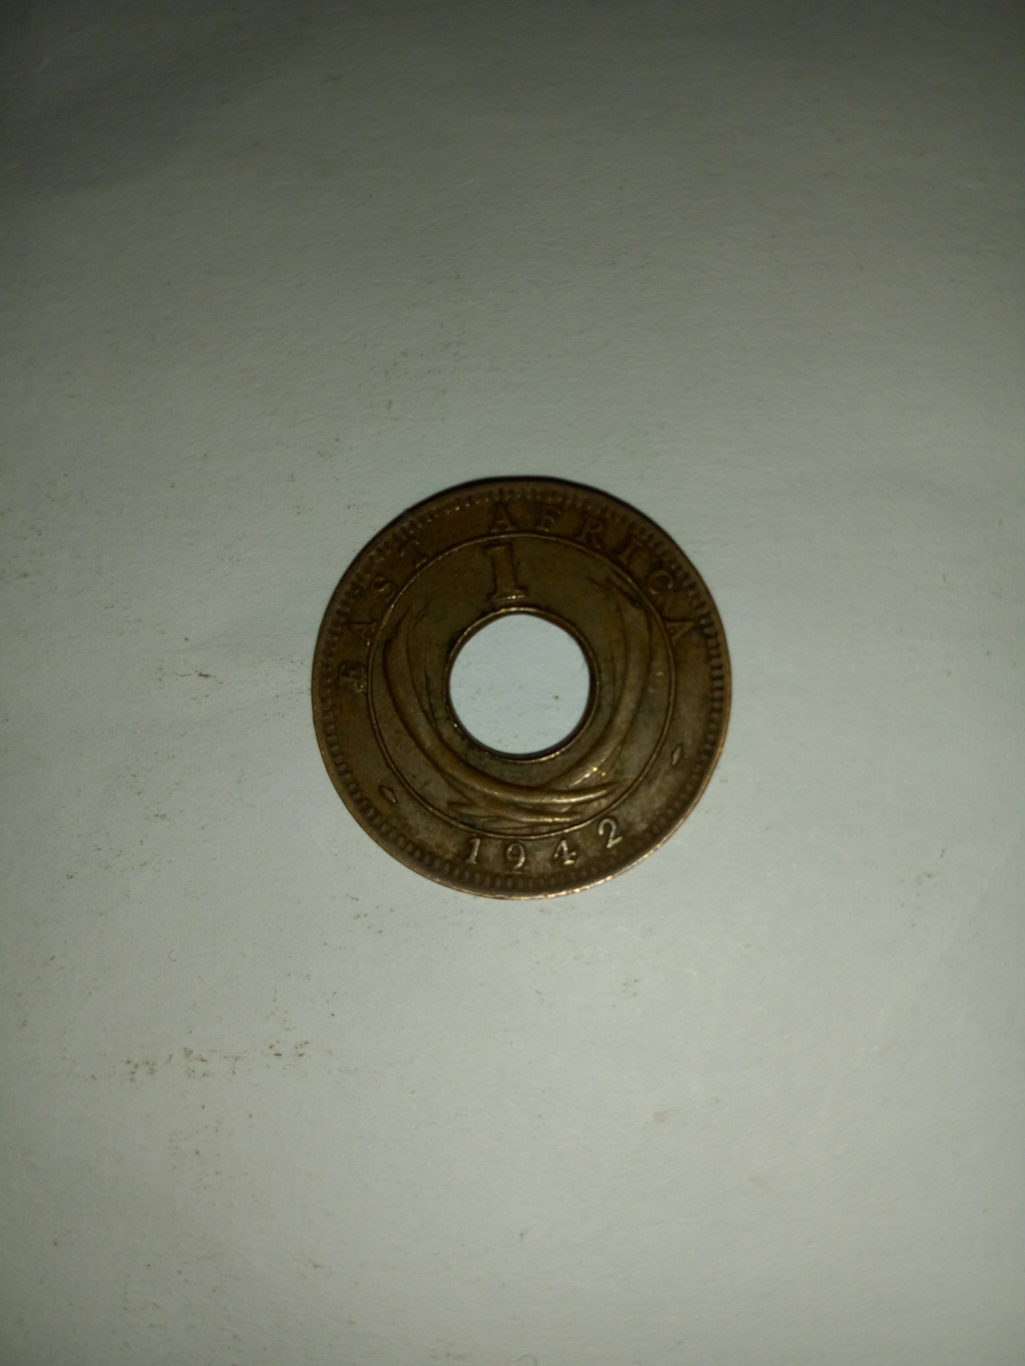 1972_georgivs V1  east Africa 1 cent